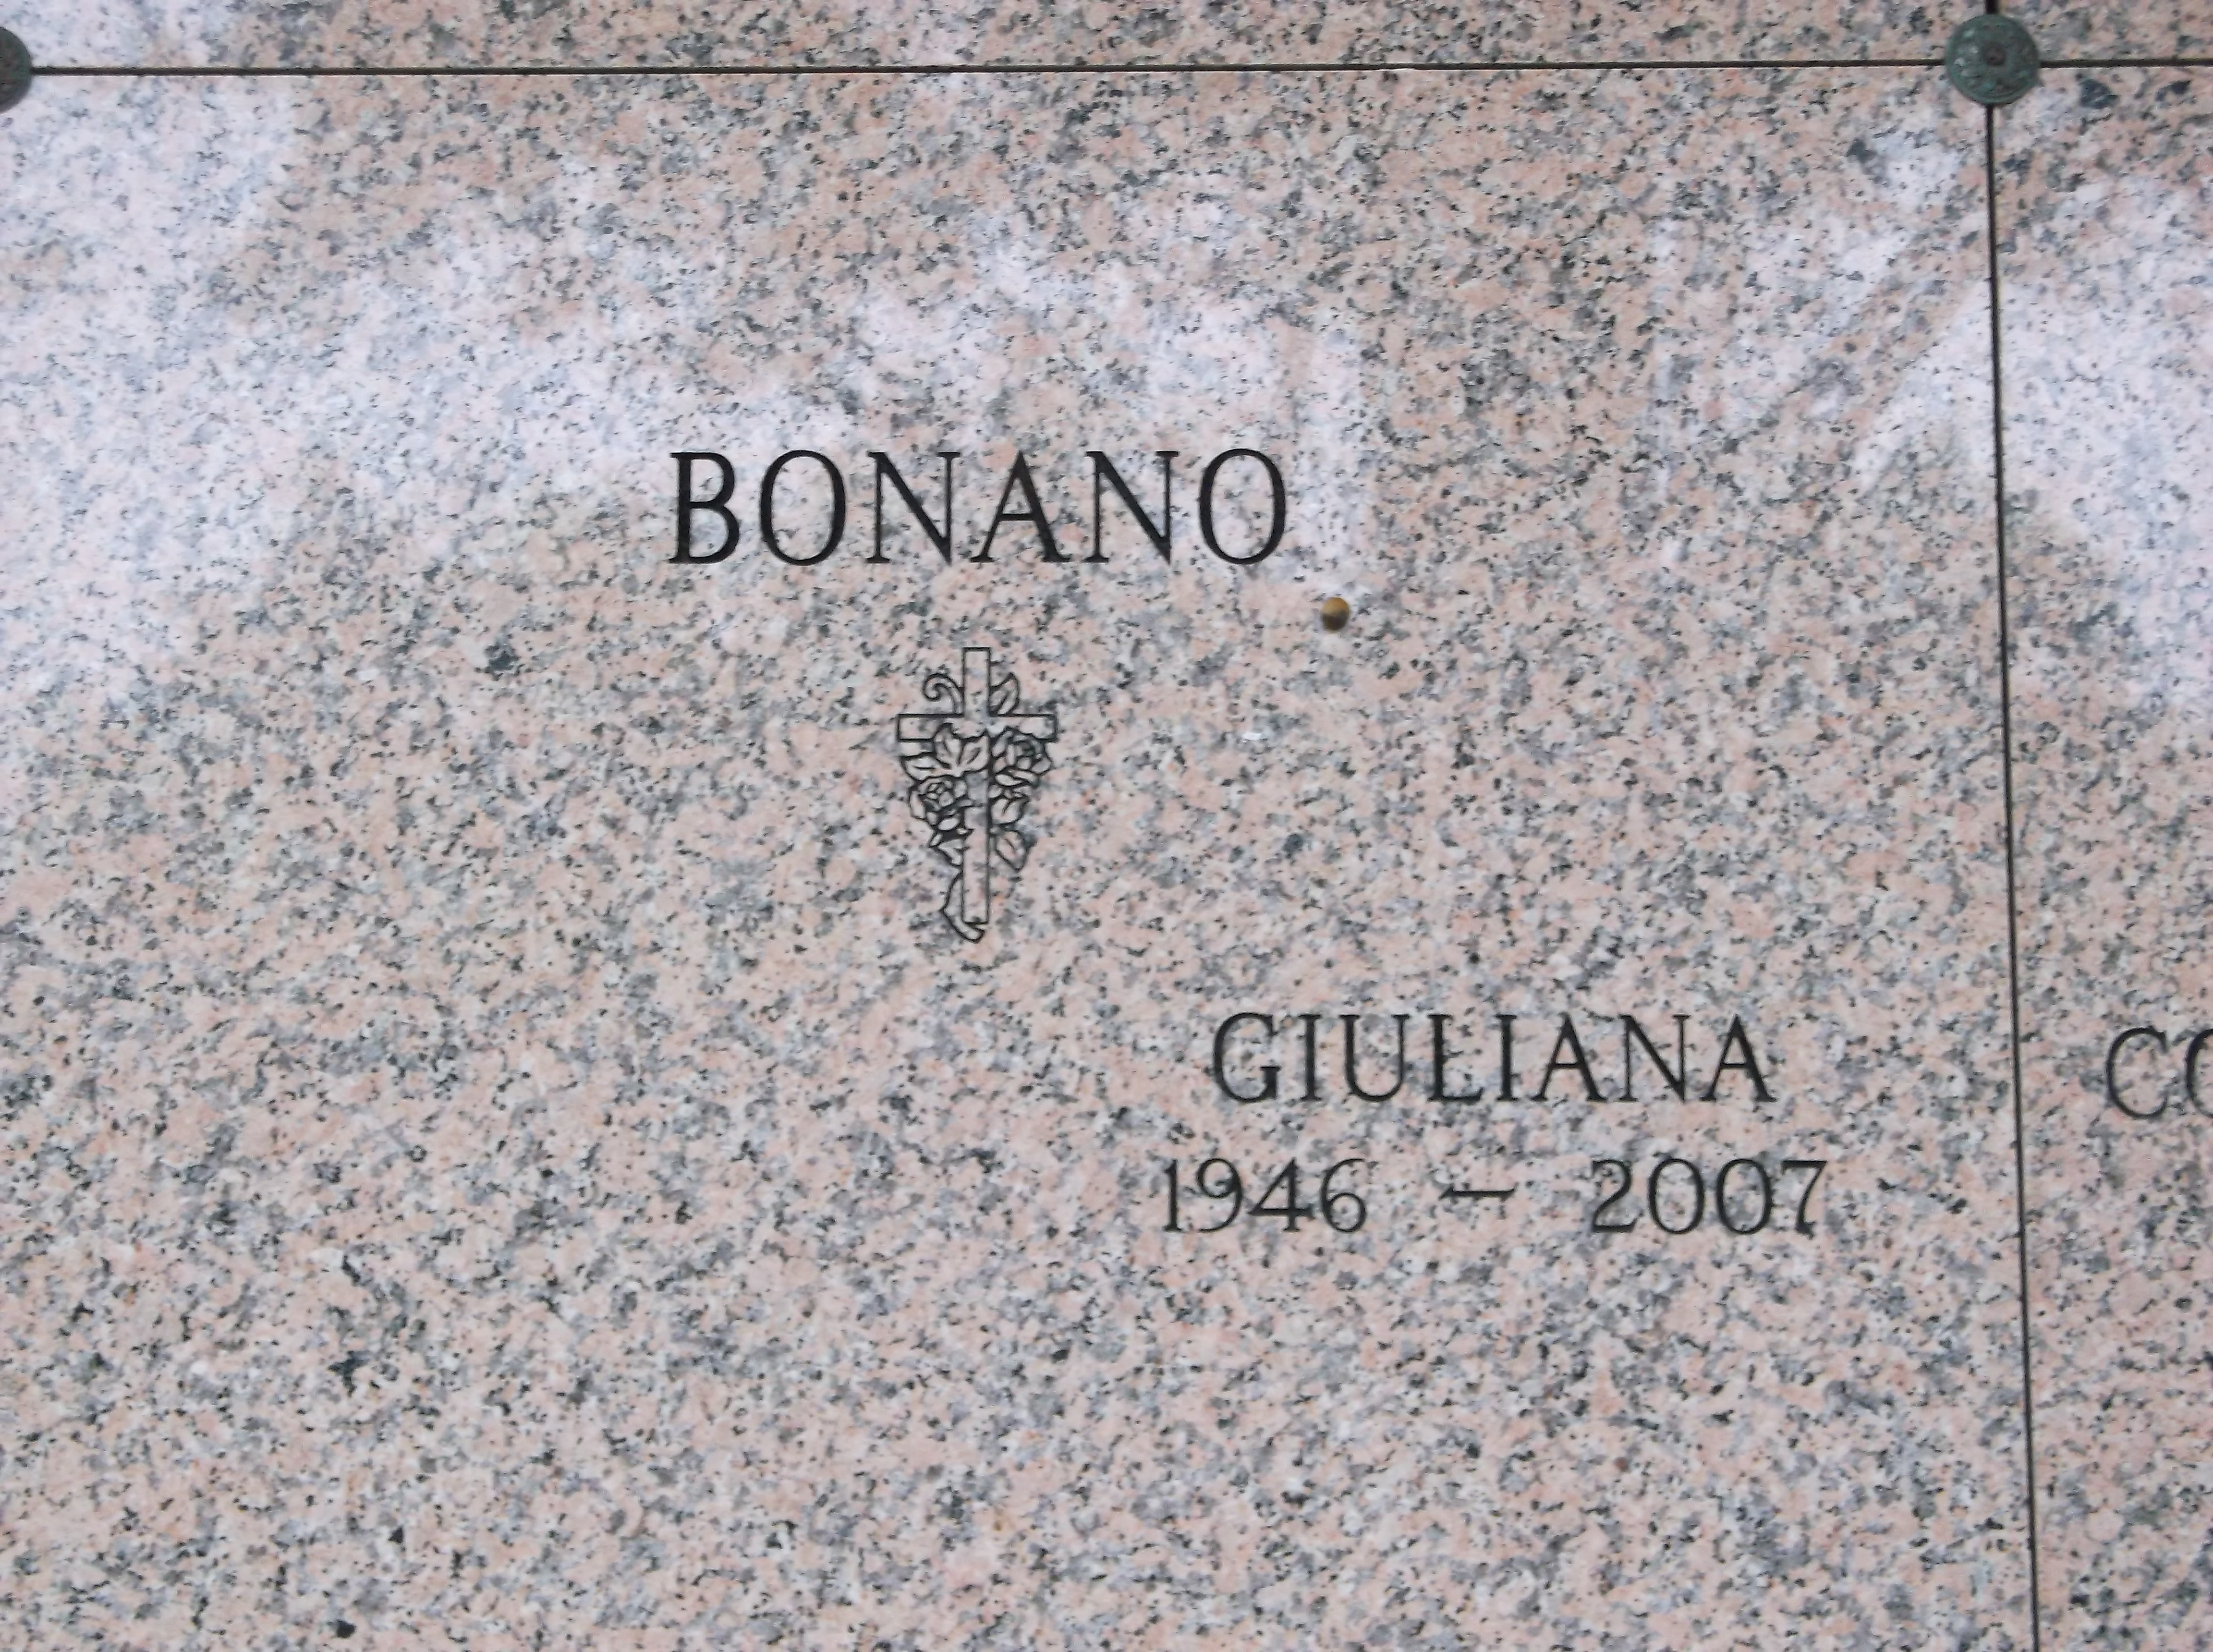 Giuliana Bonano